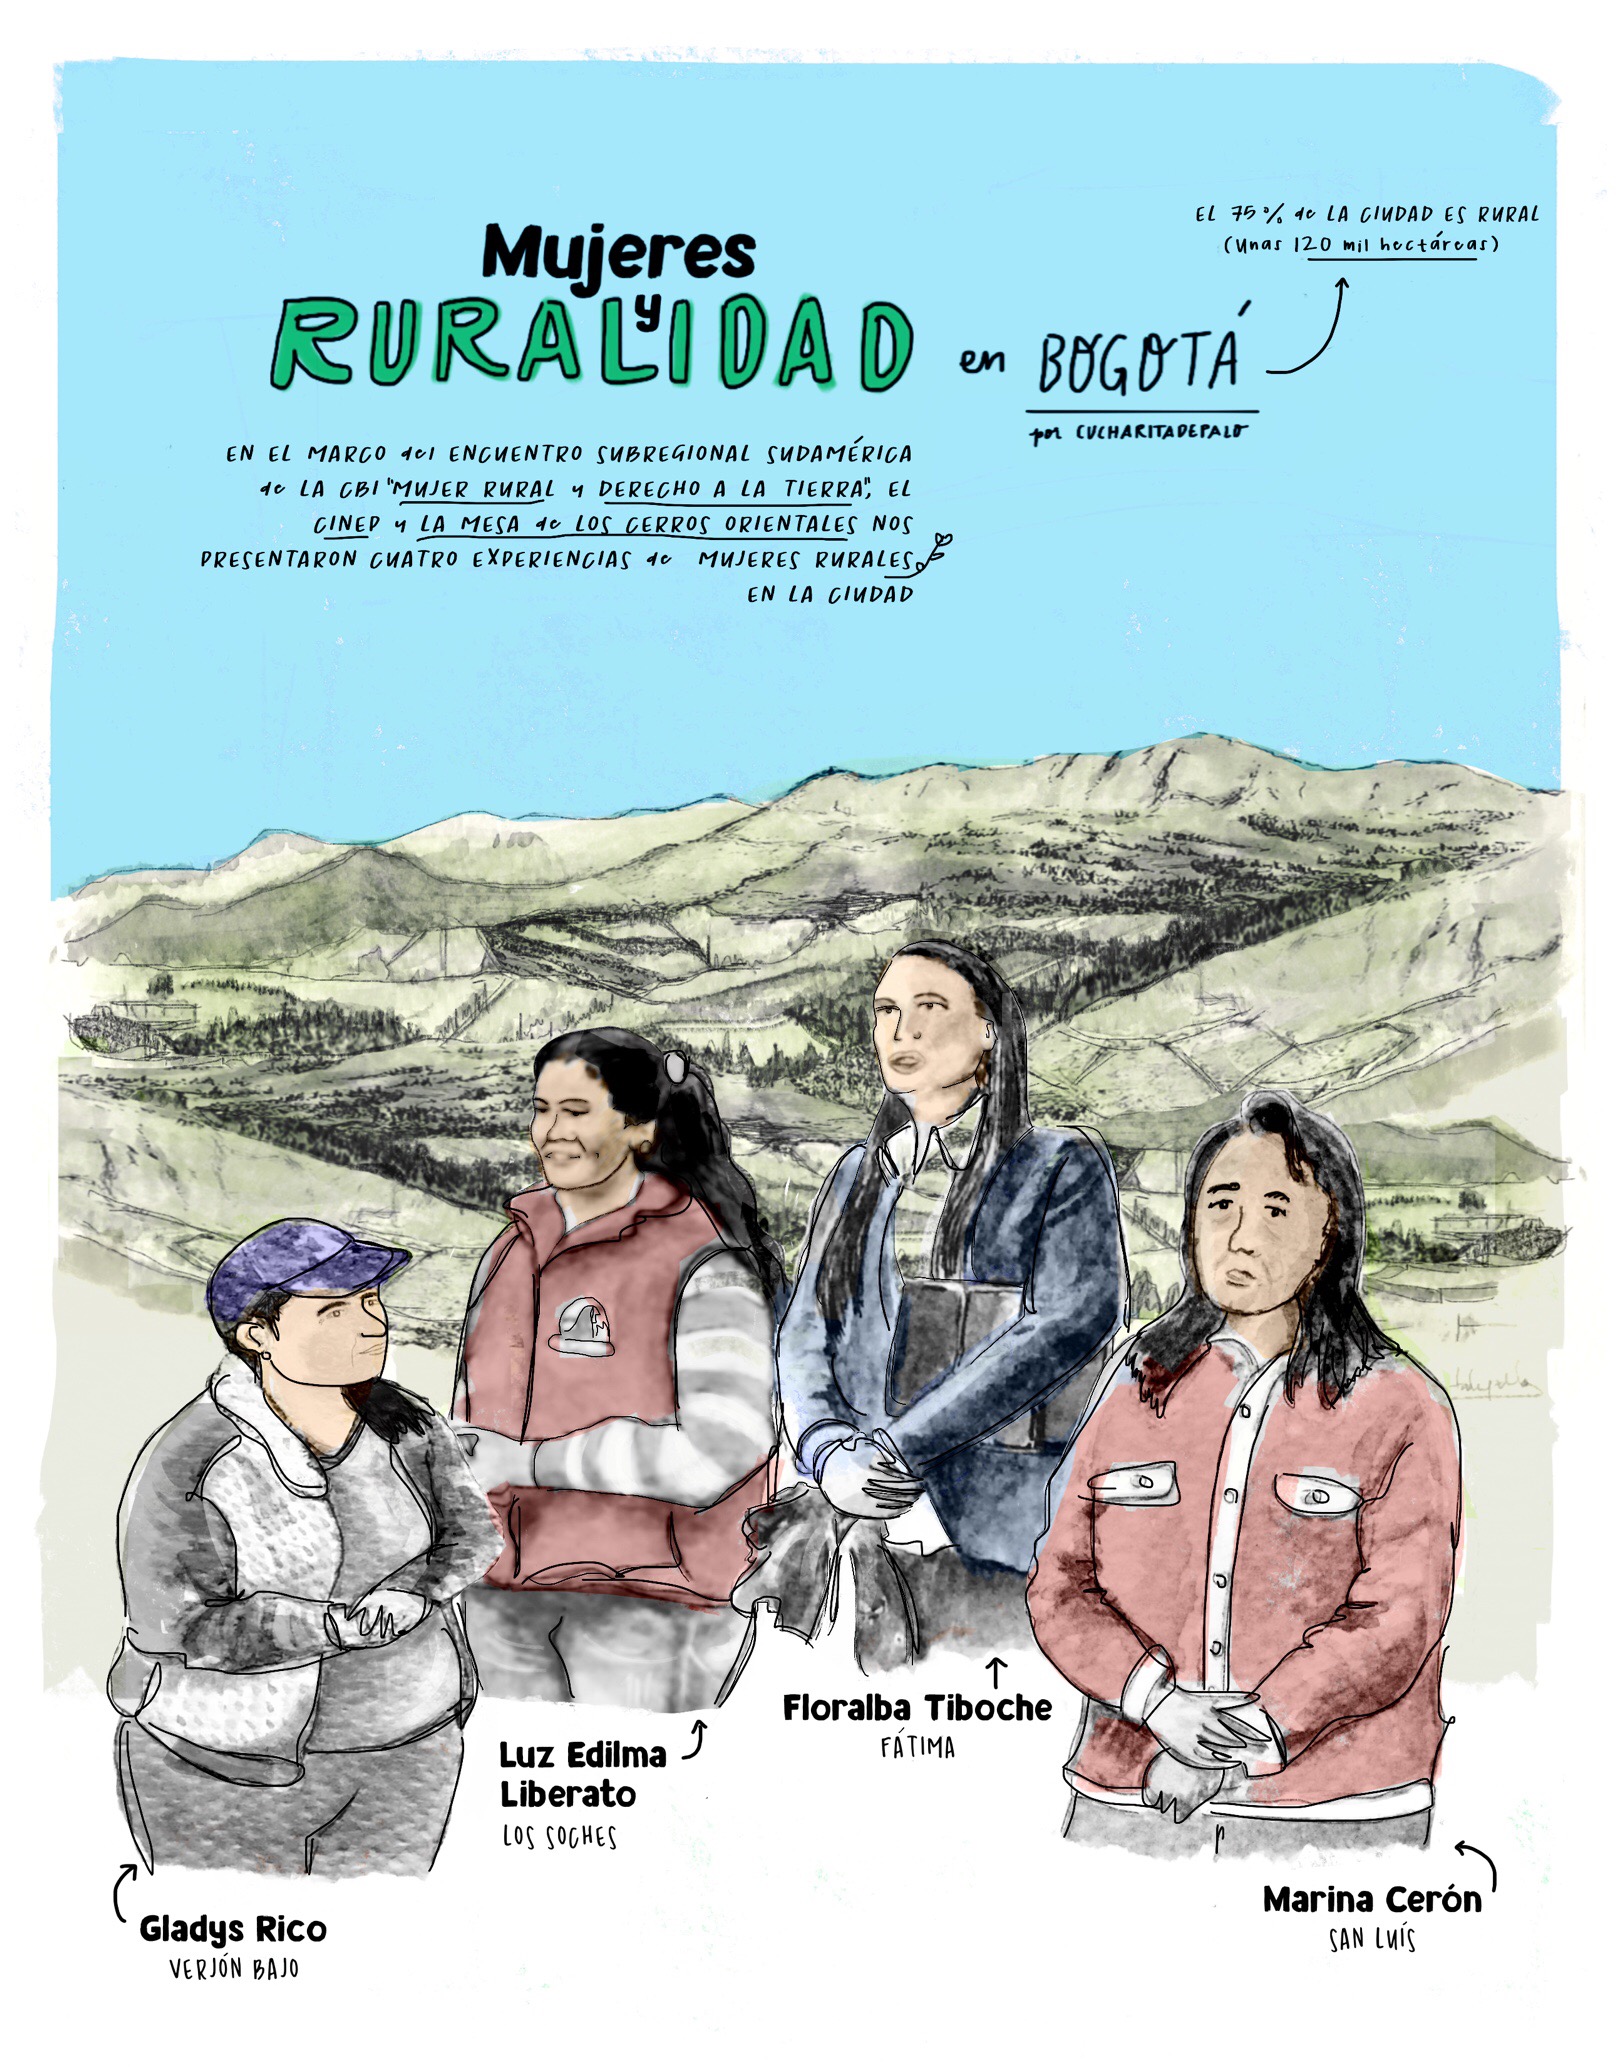 Mujer y ruralidad en Bogotá